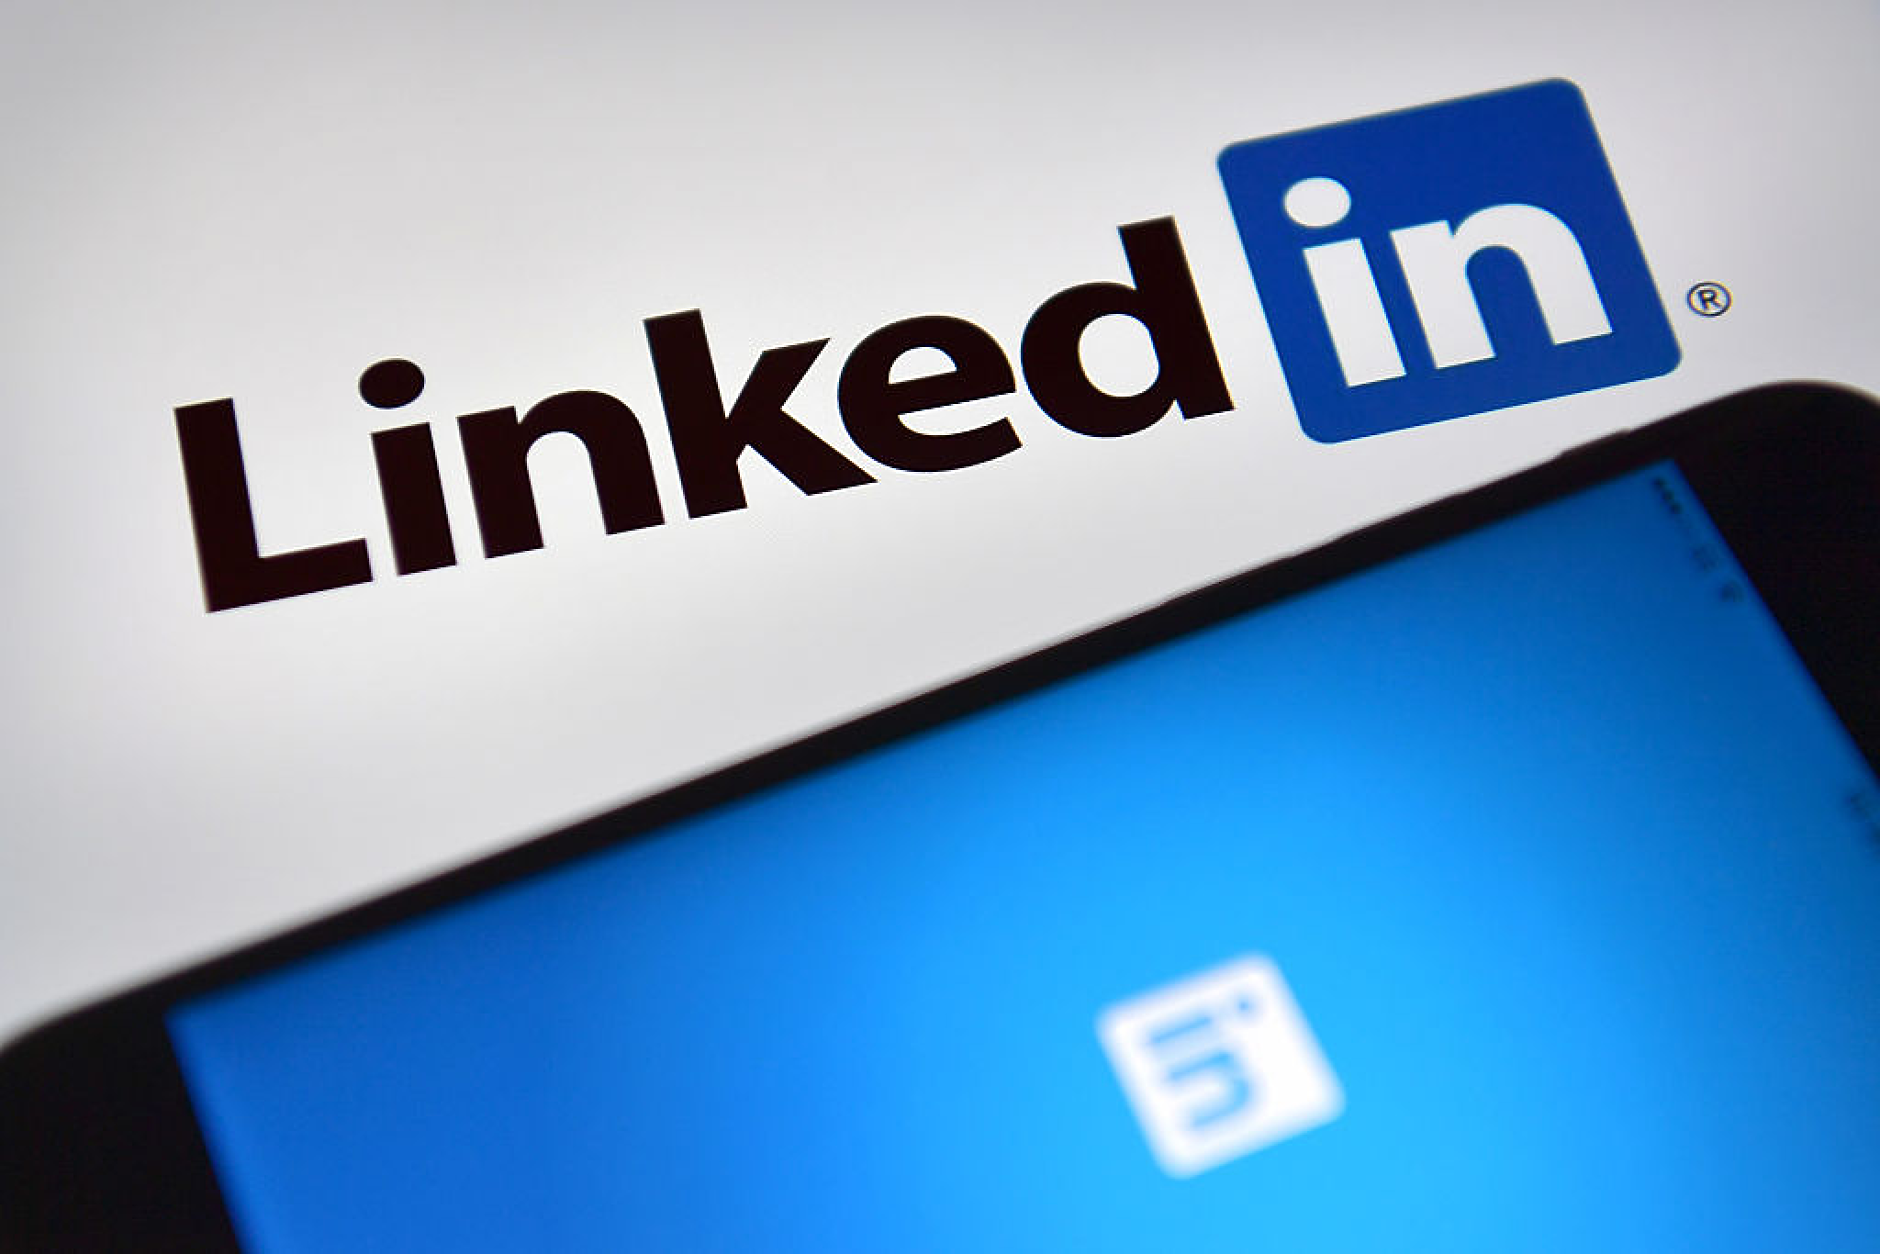 LinkedIn със съвети как да увеличите ефективността на кампанията (Инфографика)